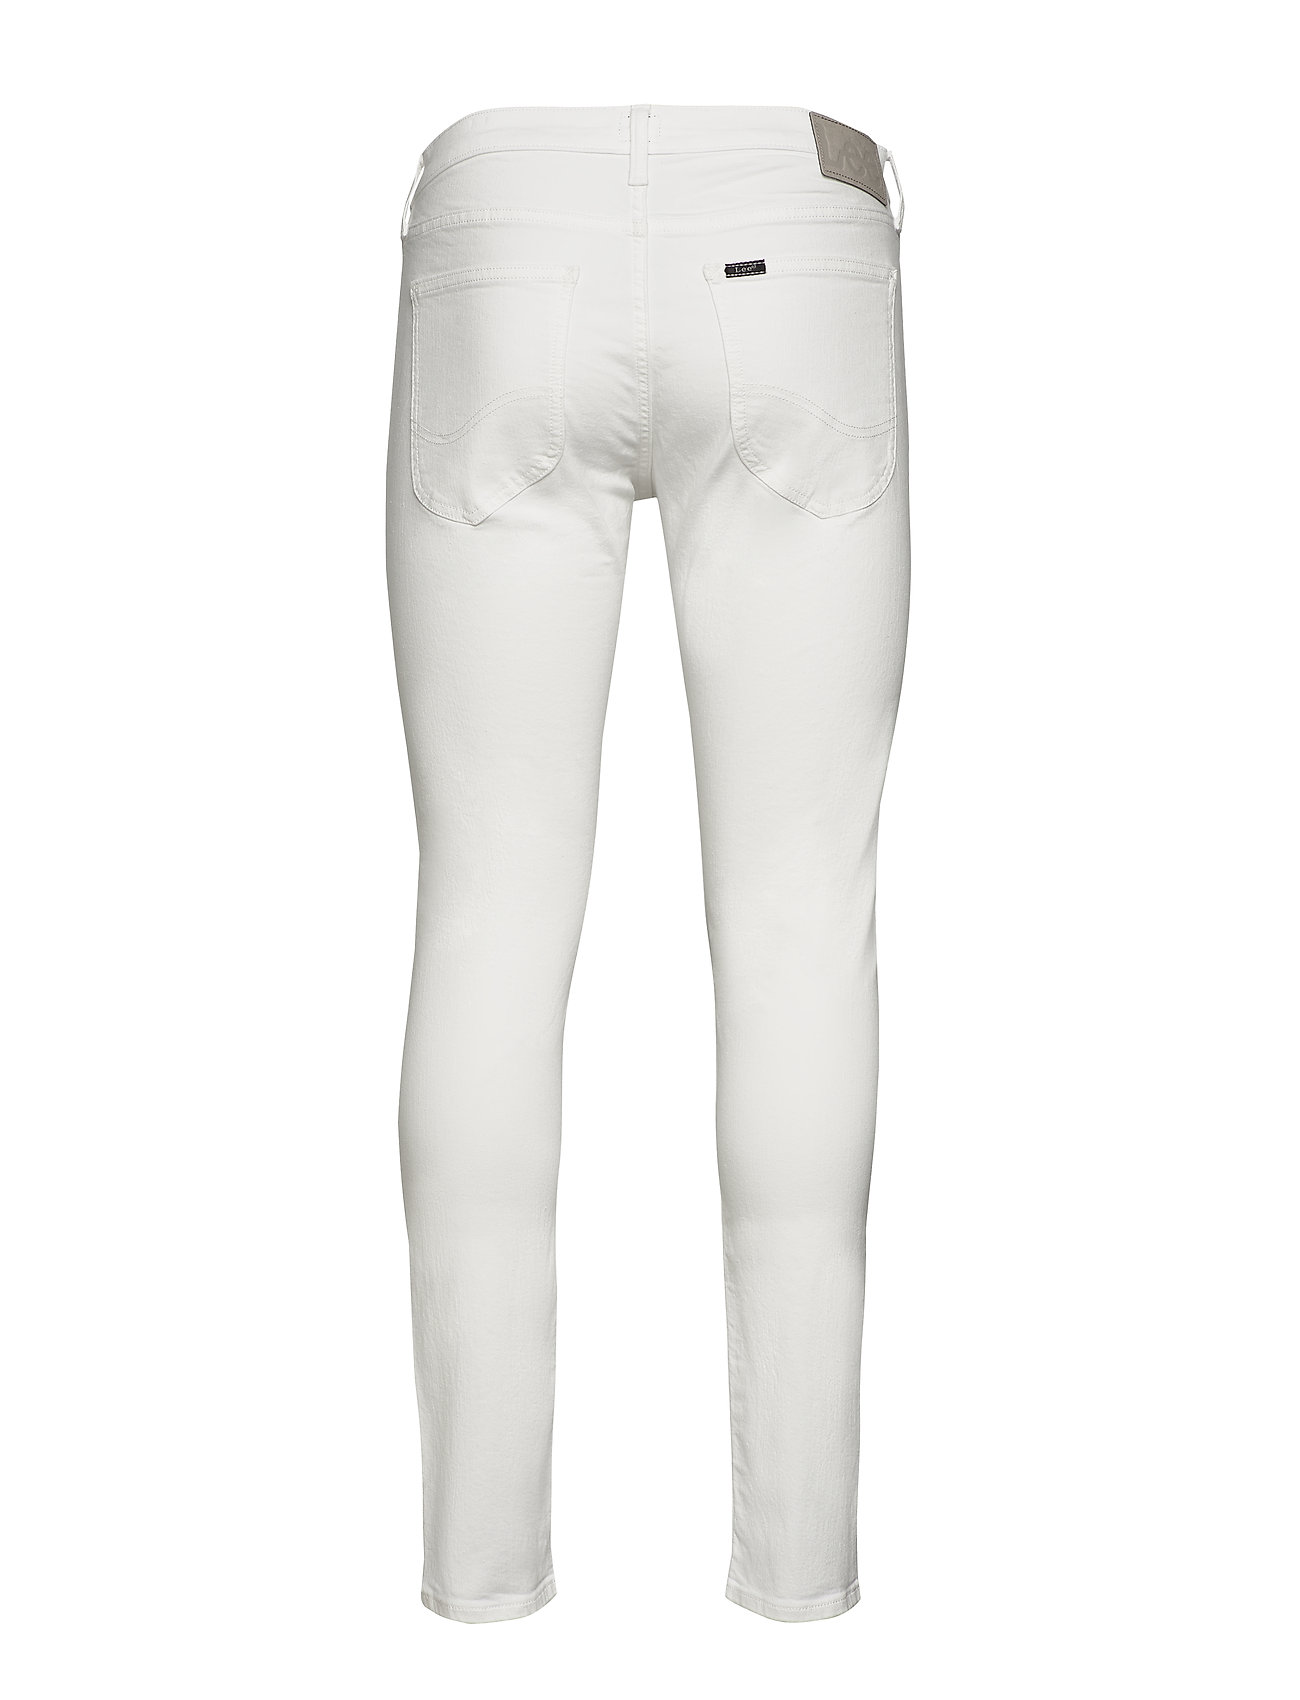 Uden for bunker Bemærk venligst Sort Lee Luke Slim Jeans Hvid Lee Jeans slim jeans for herre - Pashion.dk